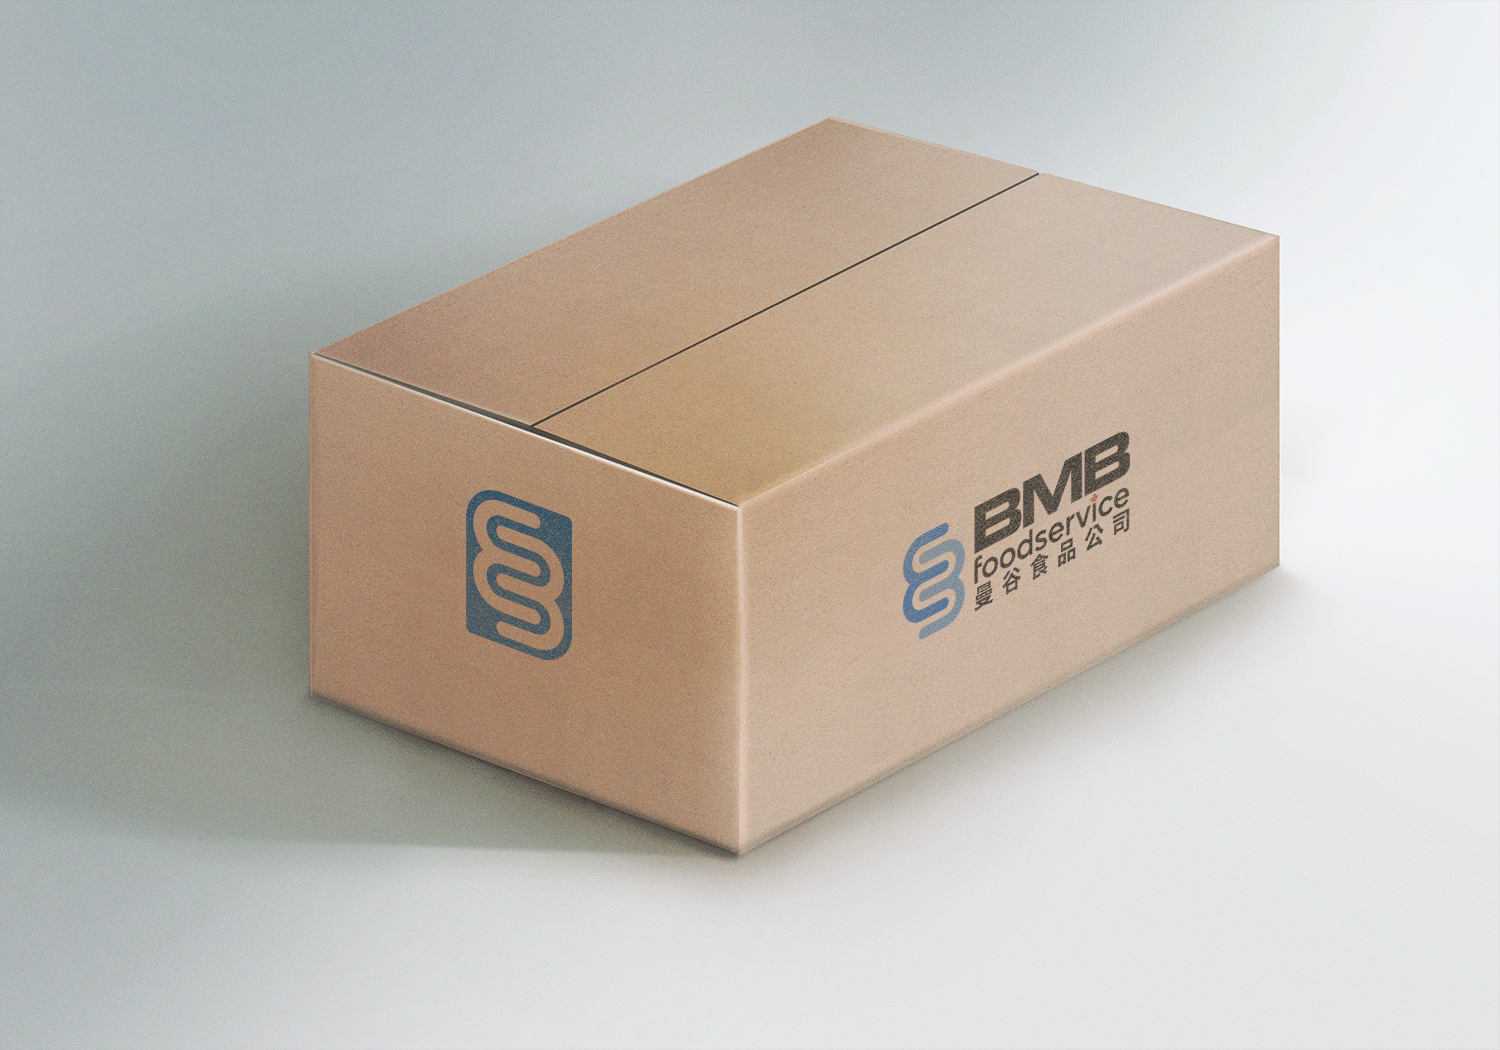 BMB2203_logoicon_mockup_Cardboardbox01_blue